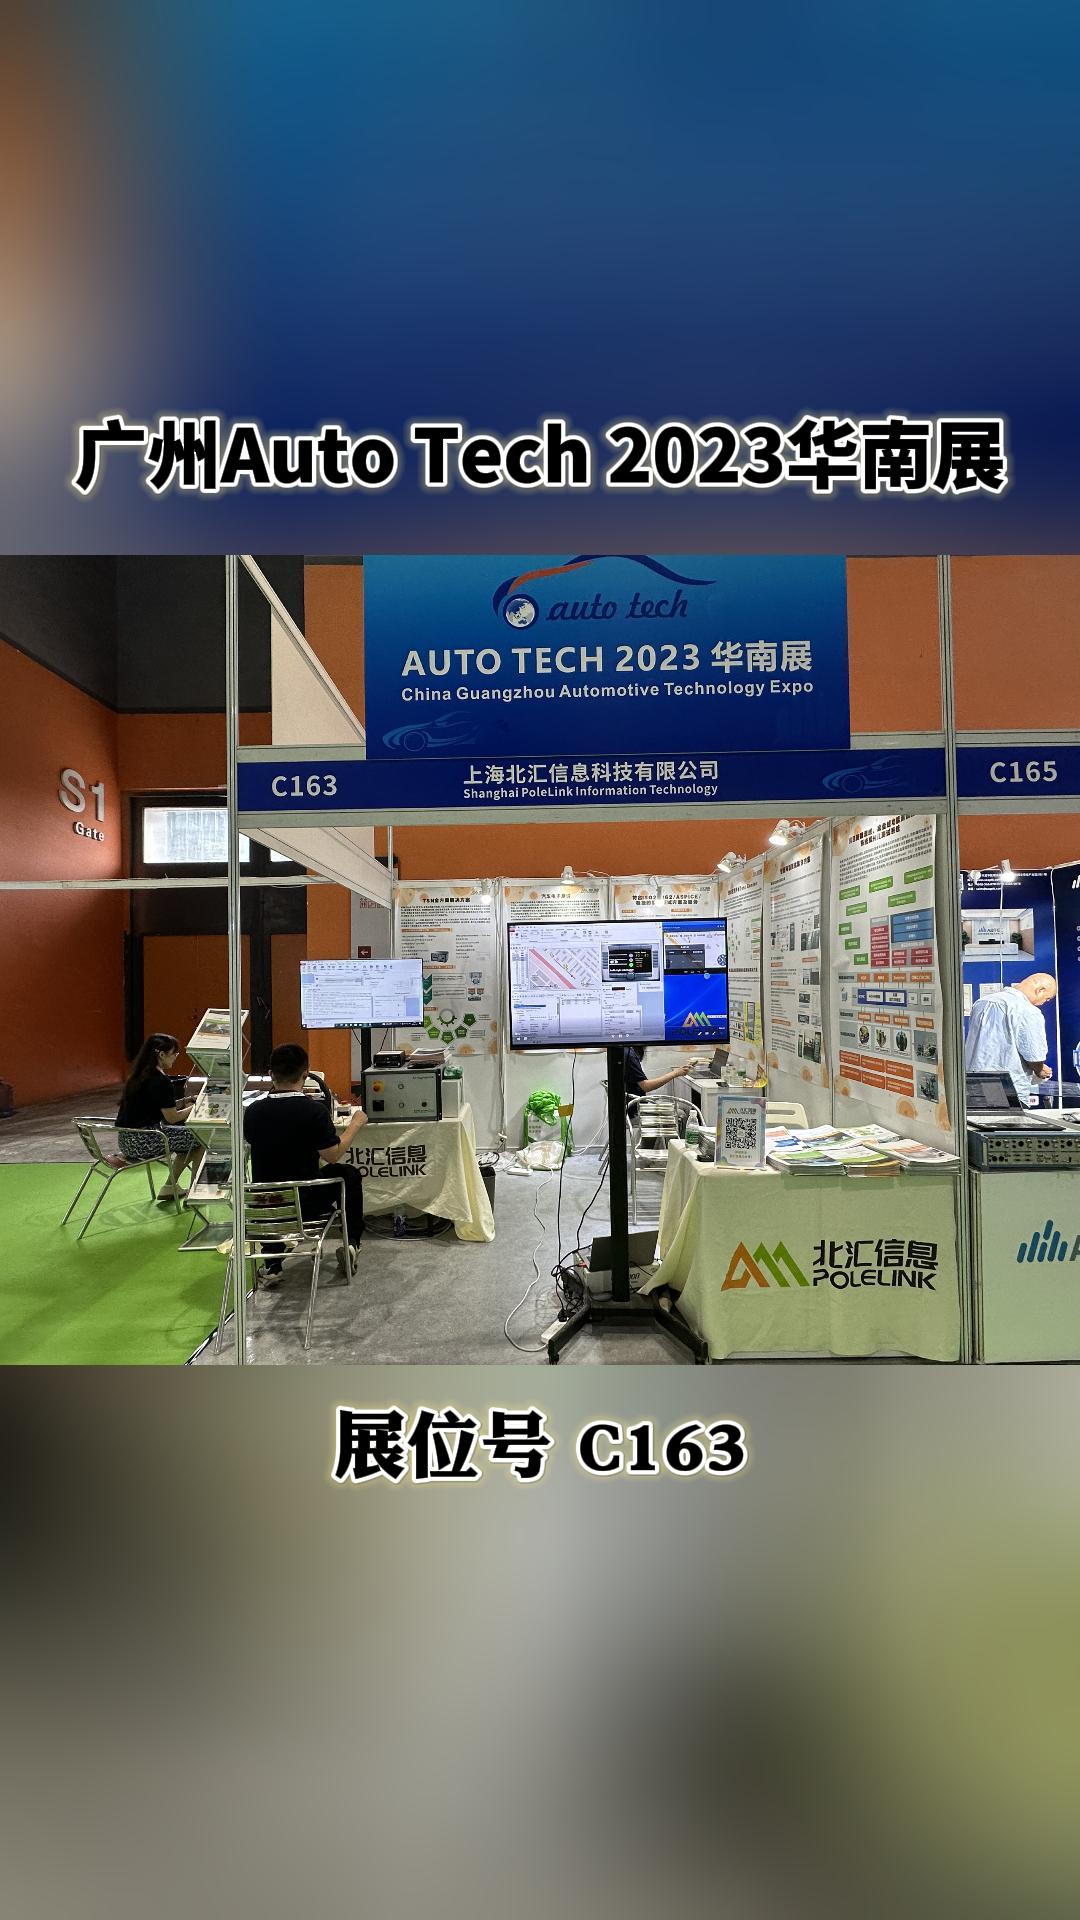 廣州我們來了，AUTO TECH 2023華南展來找北匯信息展臺吧#汽車電子 